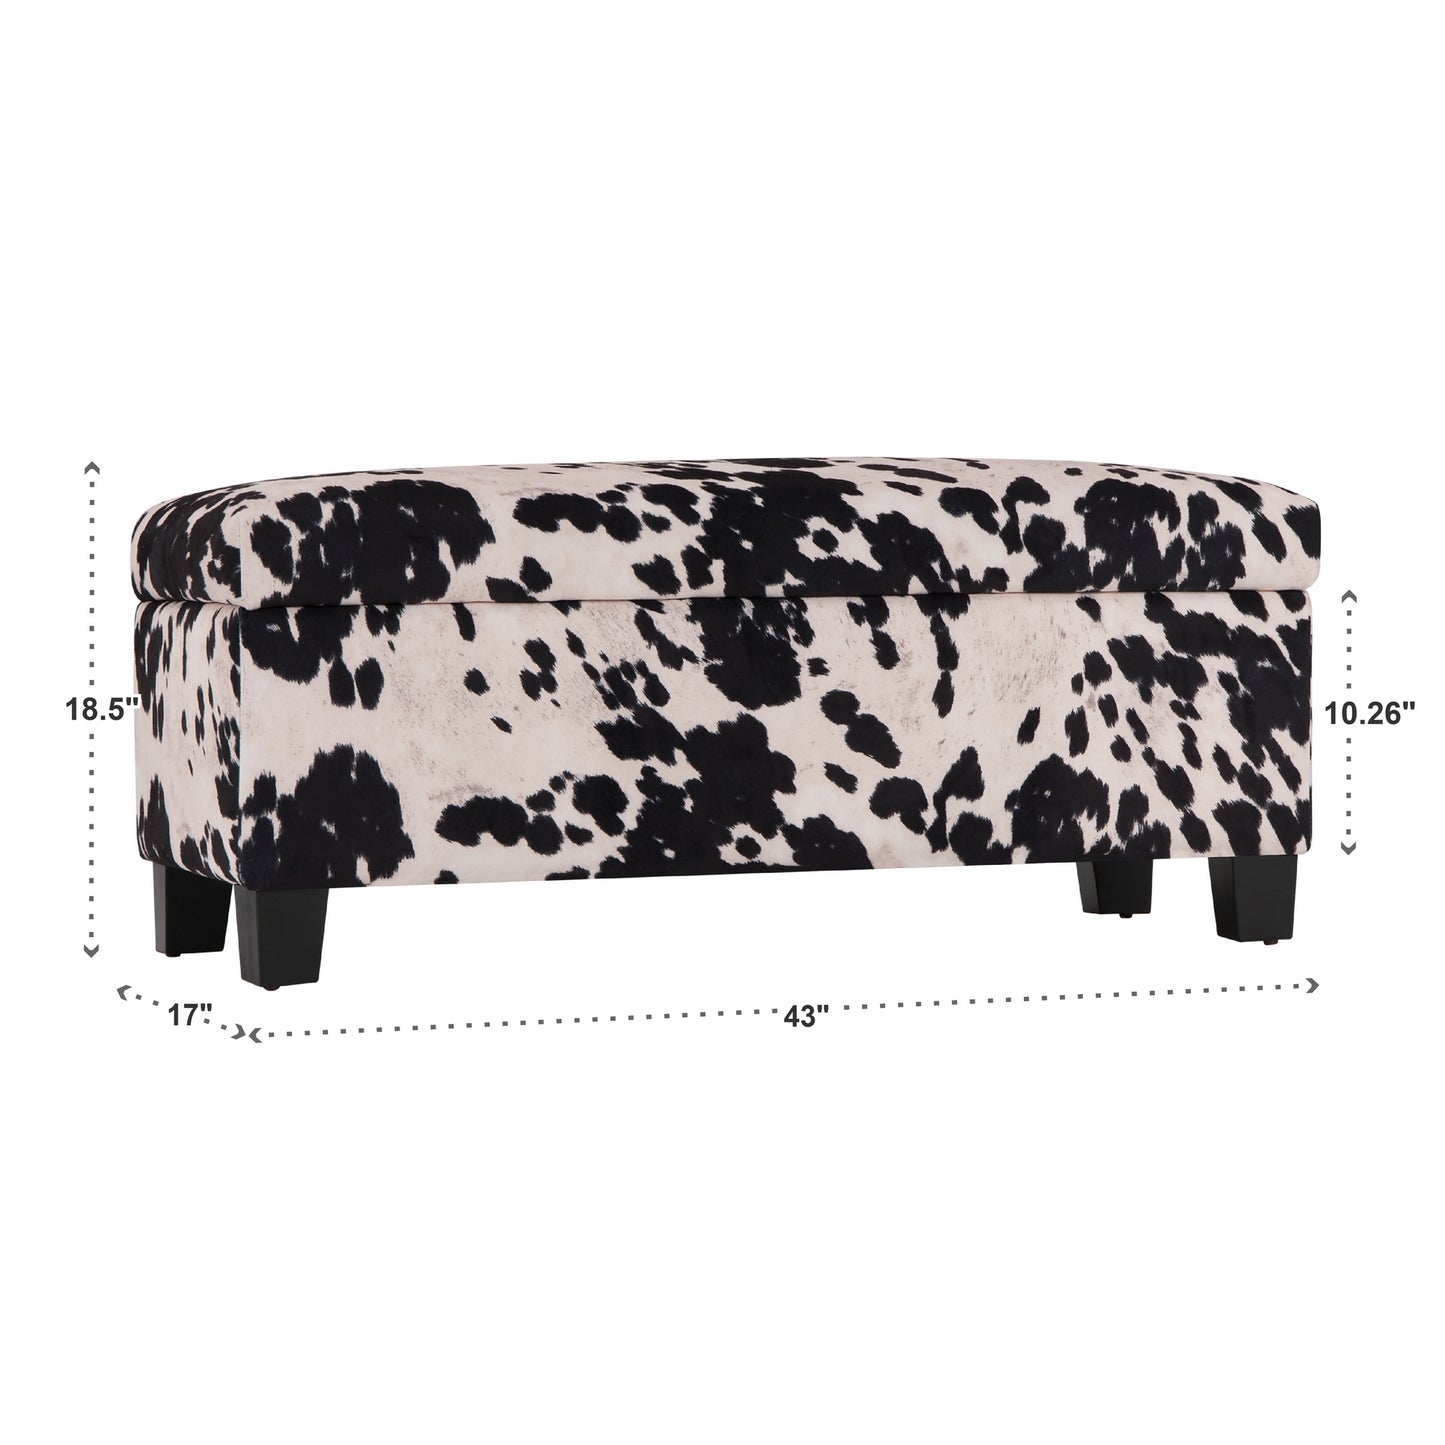 Cowhide Print Lift Top Storage Bench - Black Cowhide